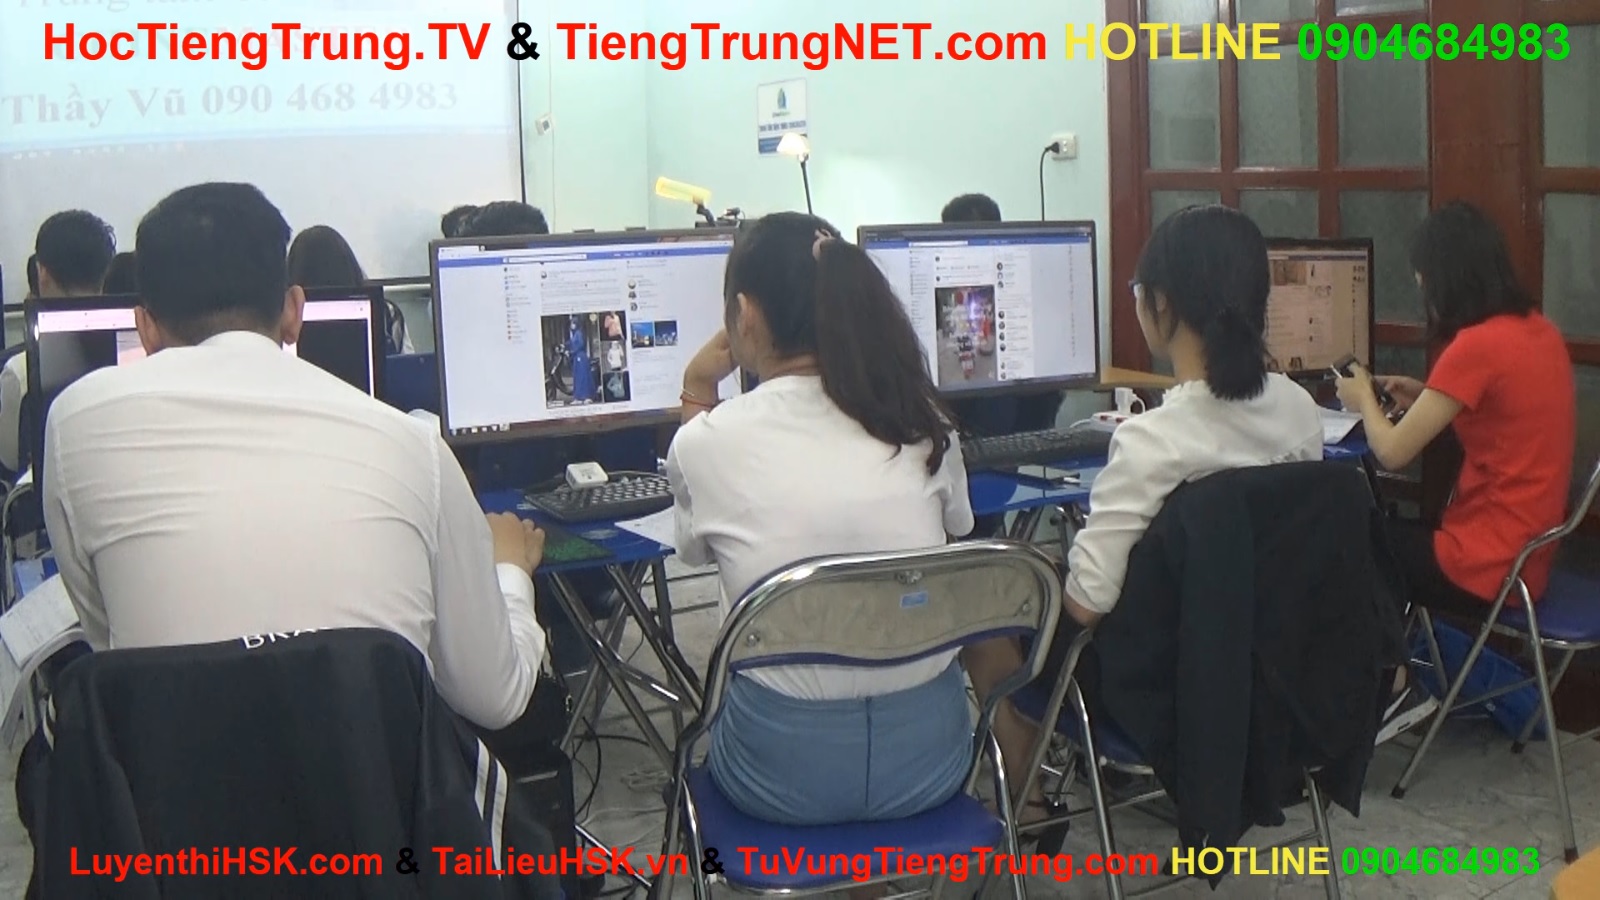 Diễn đàn tiếng Trung ChineMaster TOP 1 Việt Nam, forum tiếng trung lớn nhất và tốt nhất.